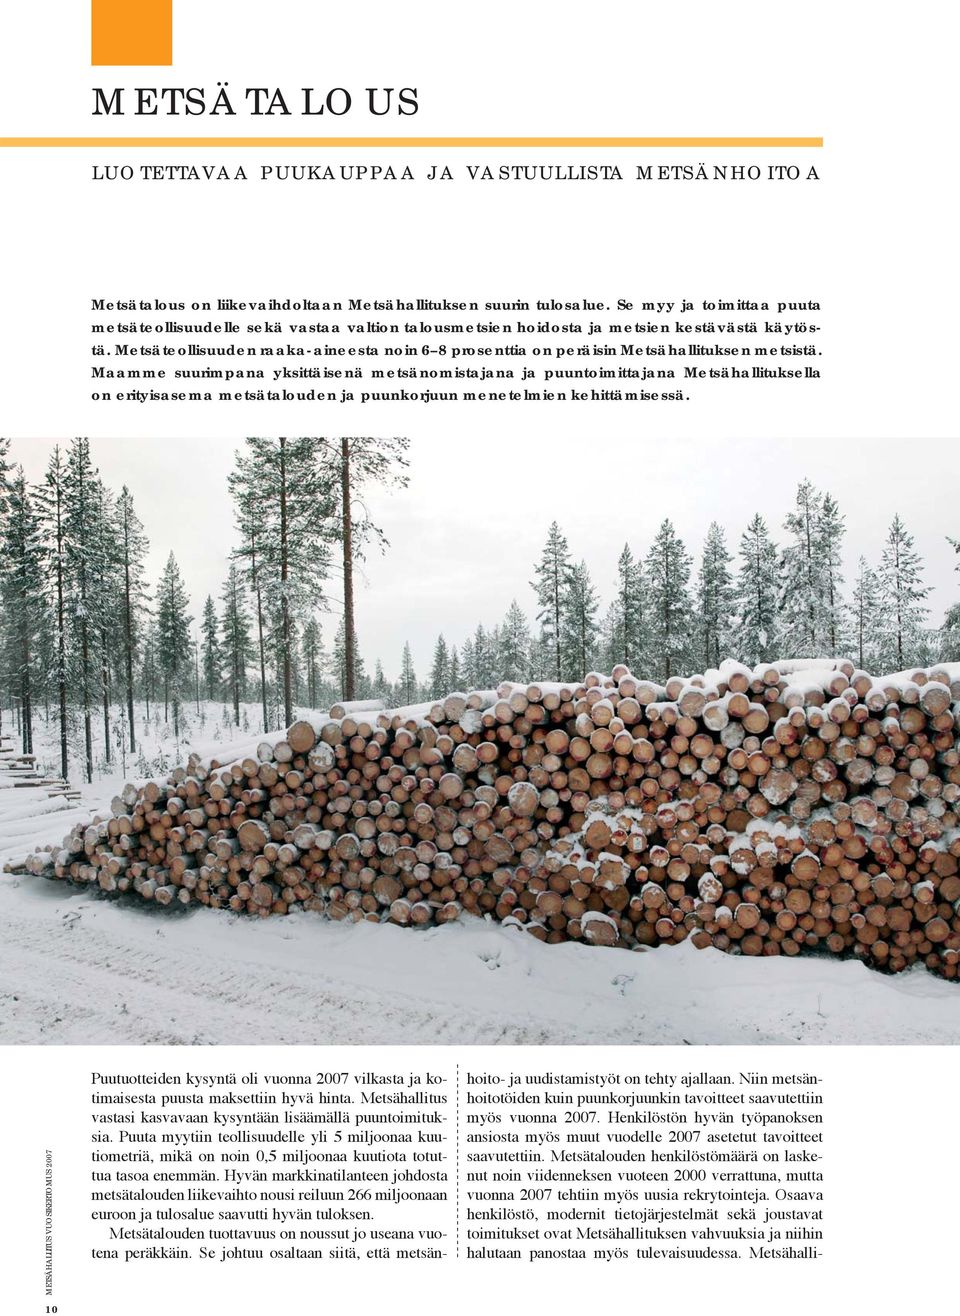 Metsäteollisuuden raaka-aineesta noin 6 8 prosenttia on peräisin Metsähallituksen metsistä.